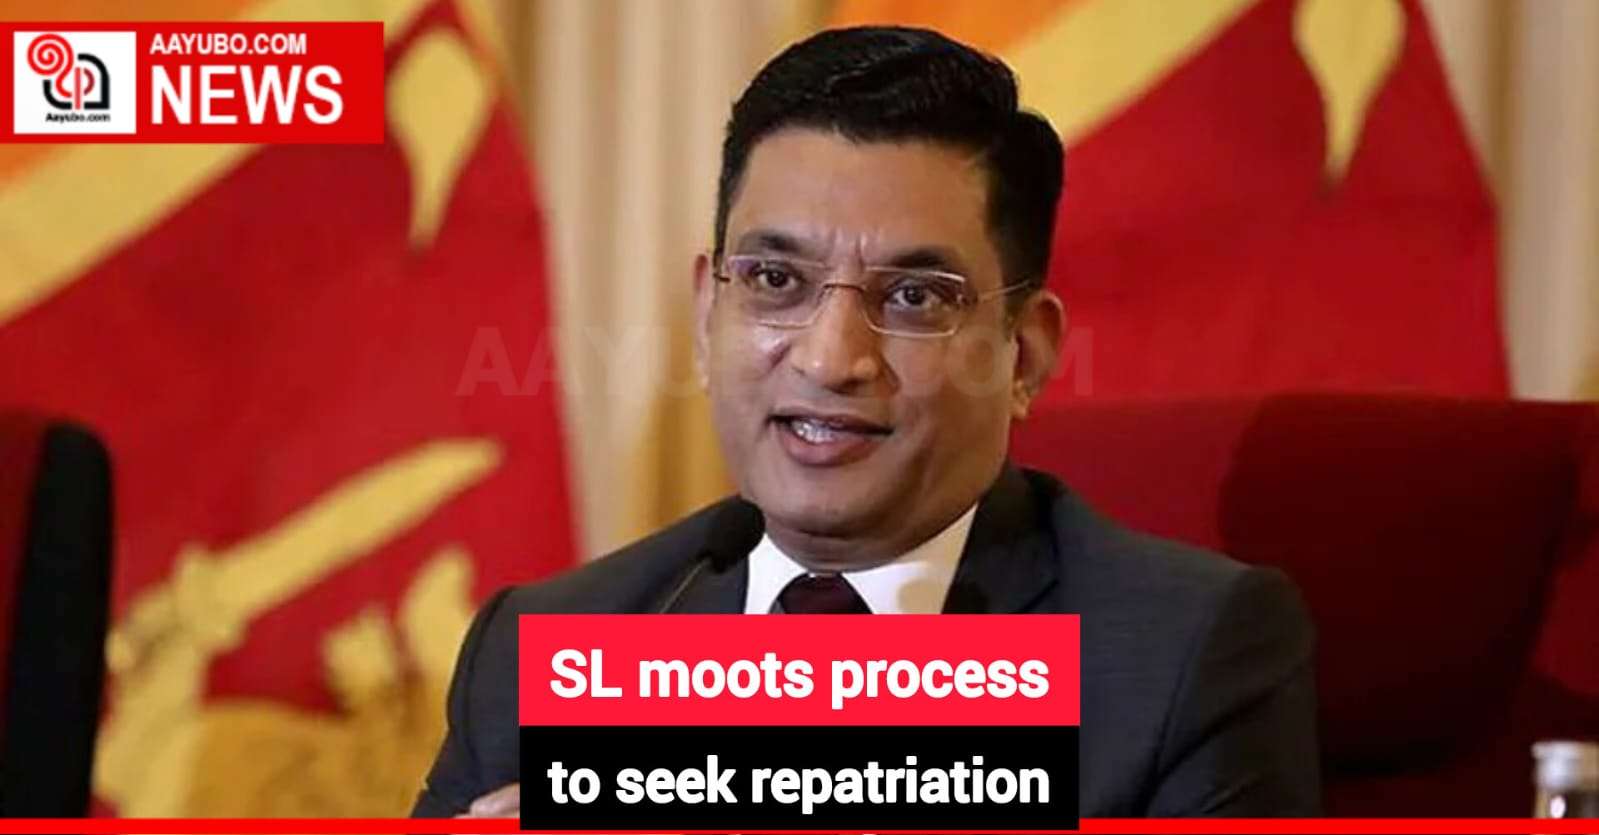 SL moots process to seek repatriation